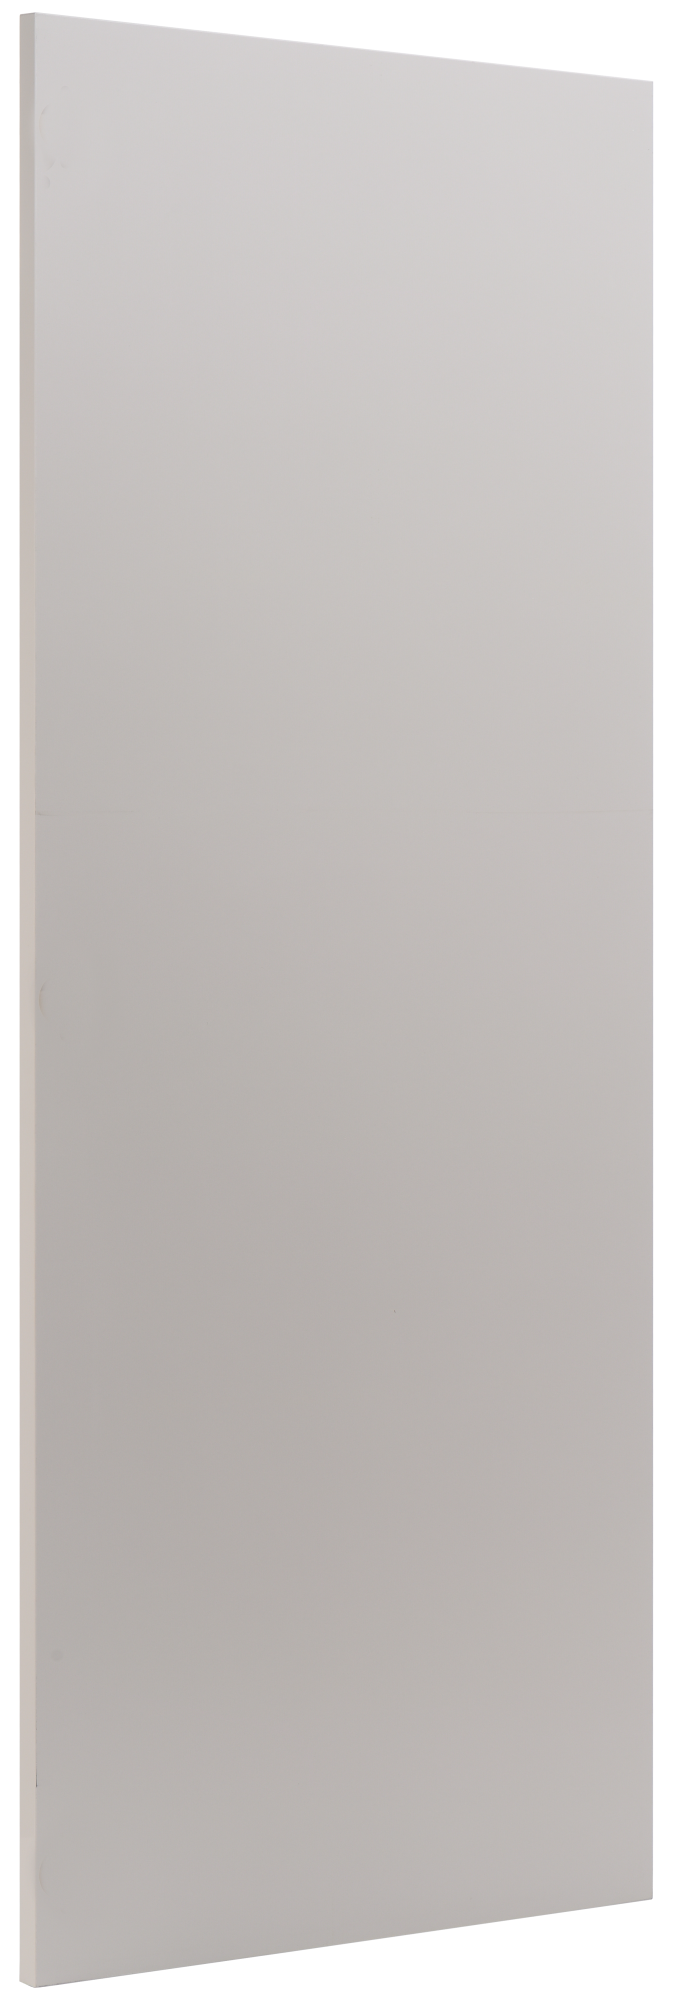 Puerta para mueble de cocina atenas topo brillo h 137.6 x l 60 cm